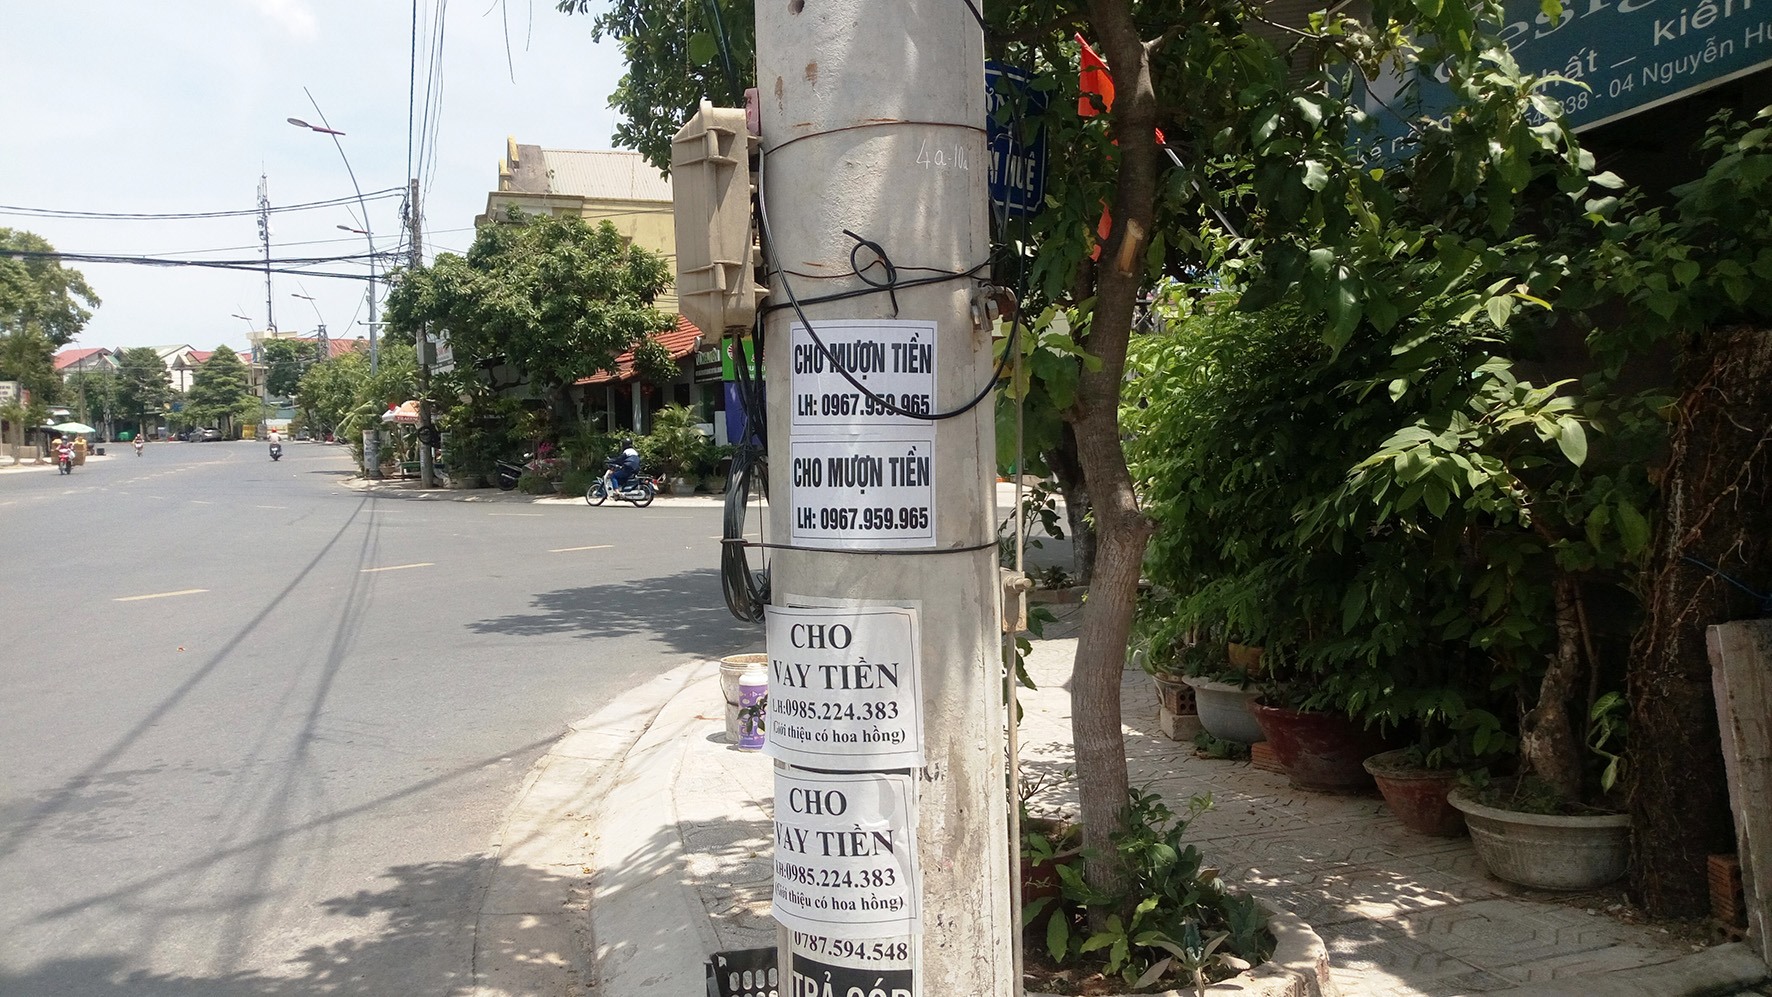 Quảng cáo cho vay, mượn tiền dán trên một cột điện ở đường Trần Hưng Đạo, TP. Đông Hà -Ảnh: A.Q​